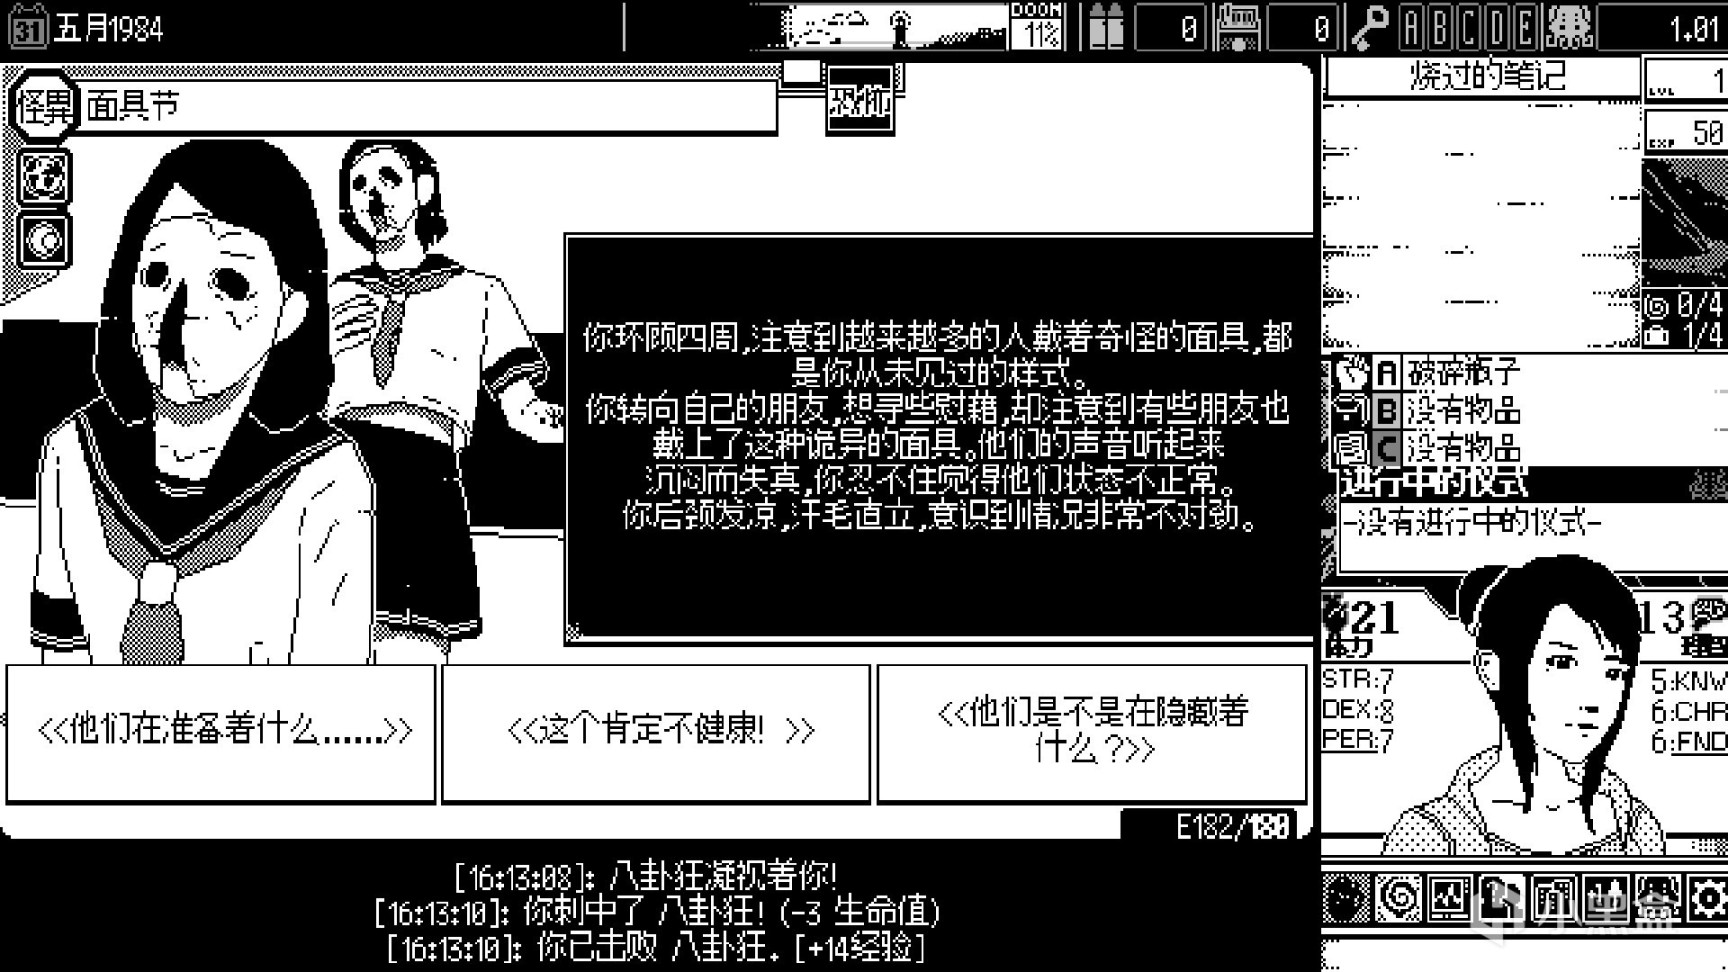 【PC遊戲】伊藤潤二+克蘇魯，這款黑白畫風的遊戲讓我SAN值狂掉-第6張